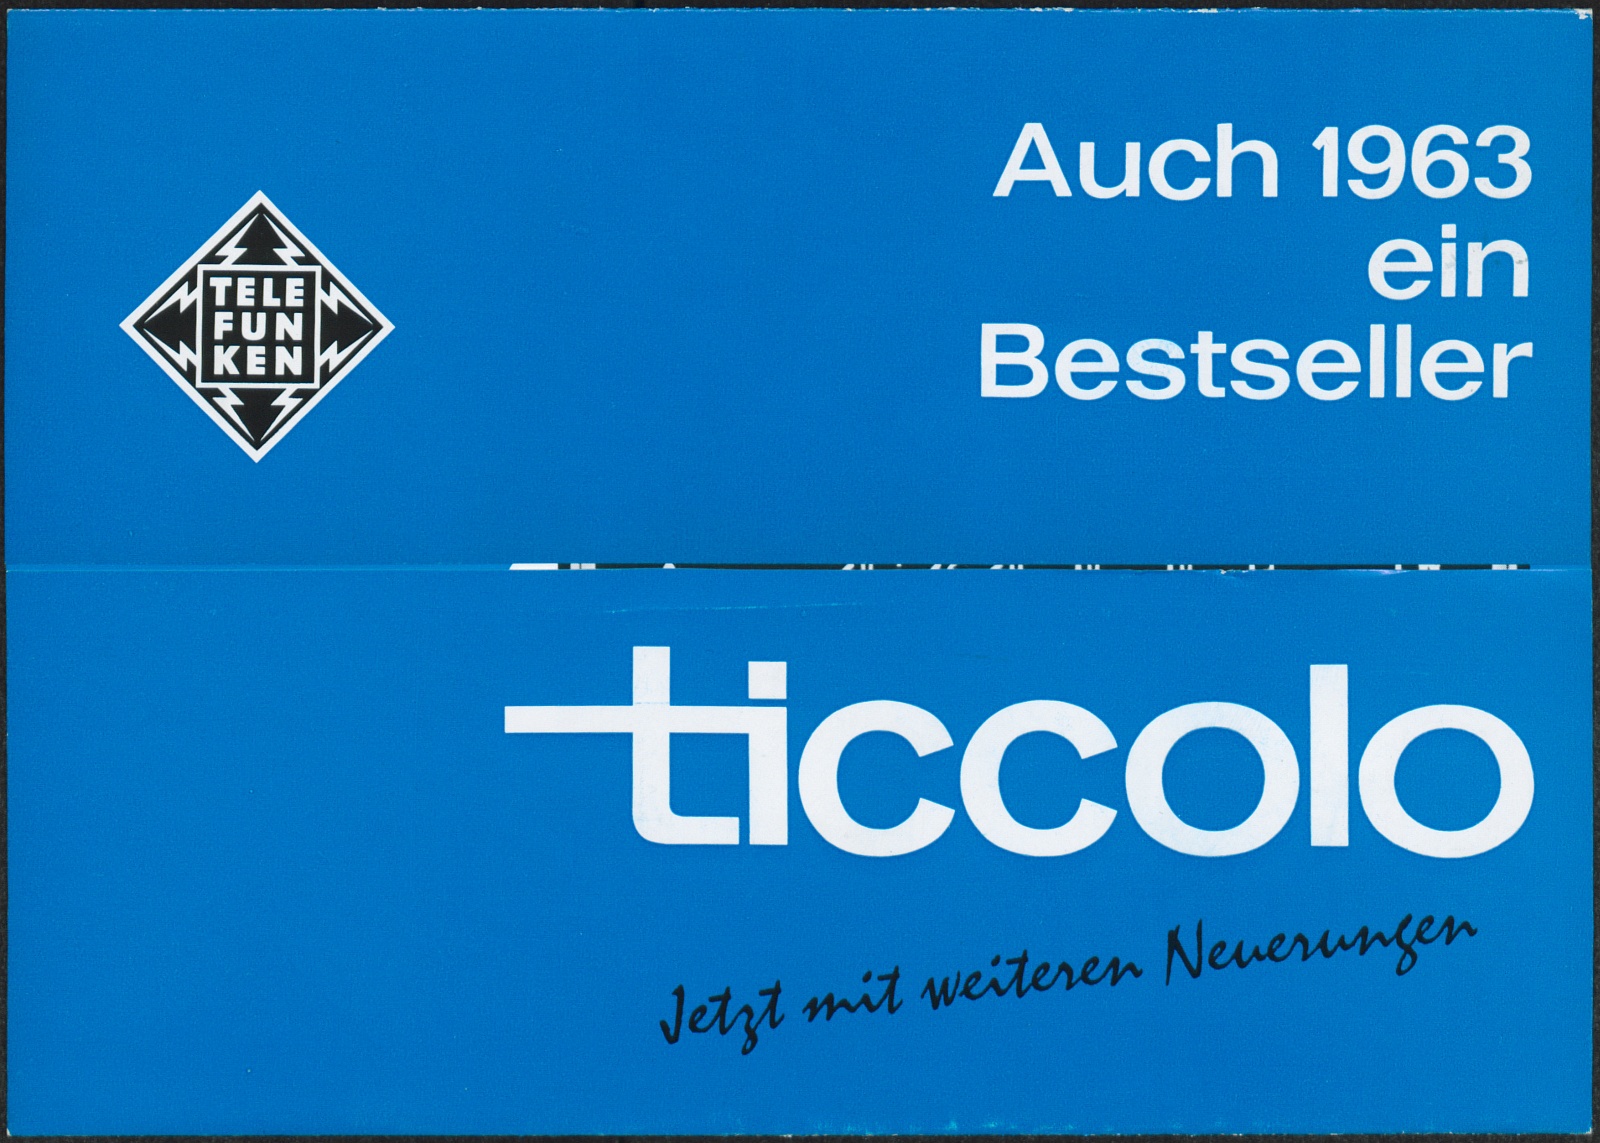 Werbeprospekt: Auch 1963 ein Bestseller; Telefunken Ticcolo; jetzt mit weiteren Neuerungen (Stiftung Deutsches Technikmuseum Berlin CC0)